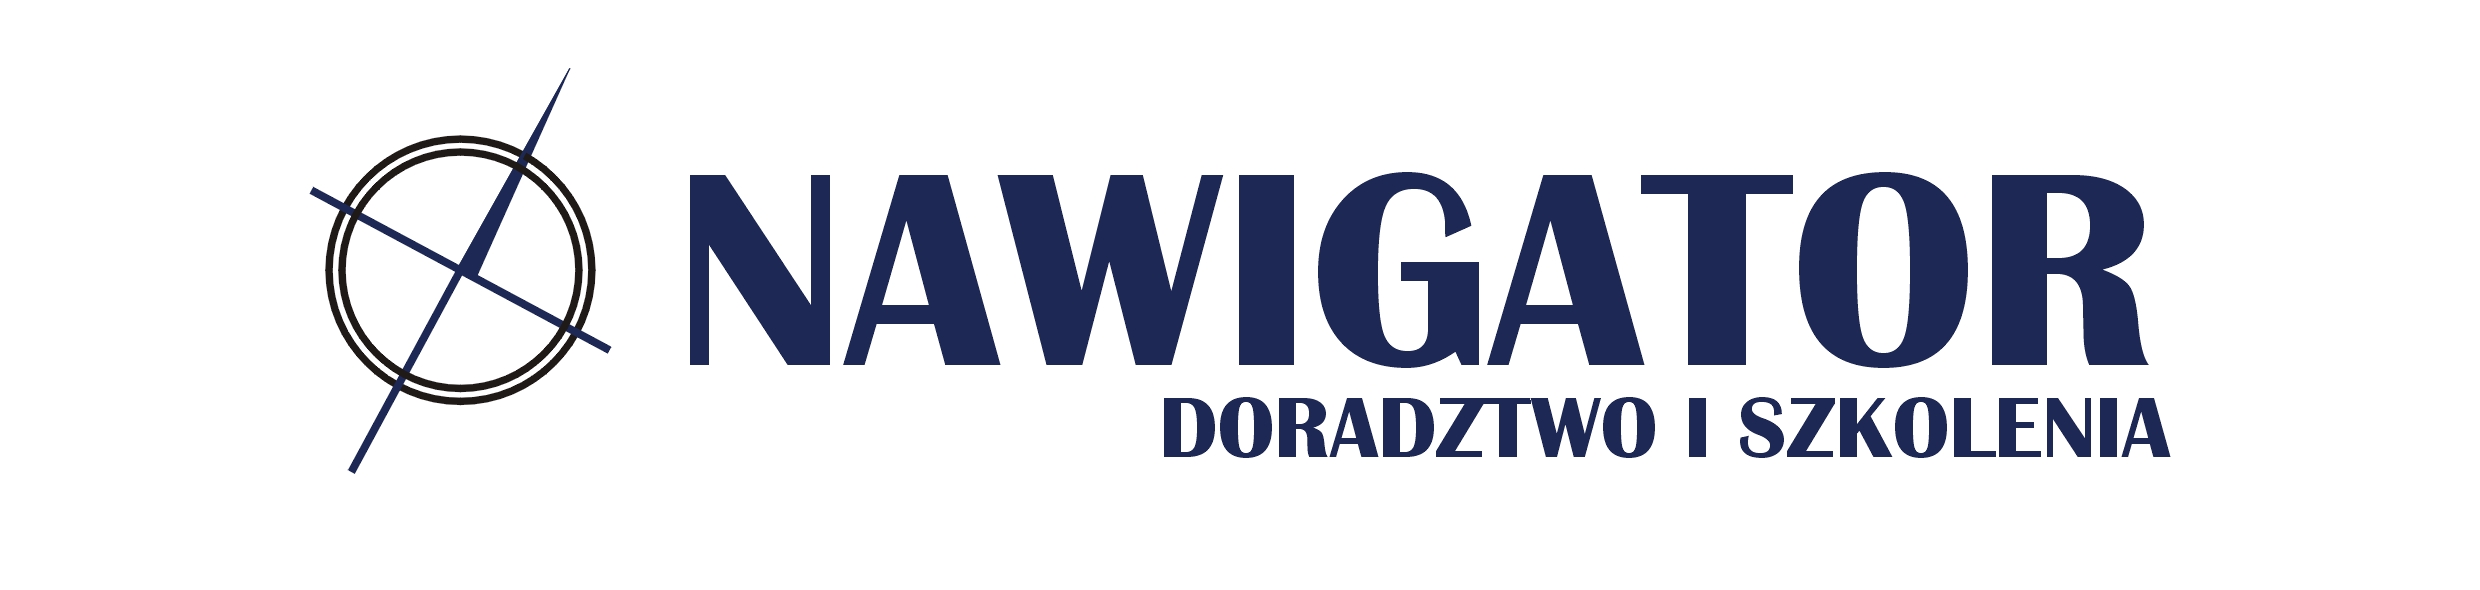 Nawigator Doradztwo i Szkolenia sp. z o.o.